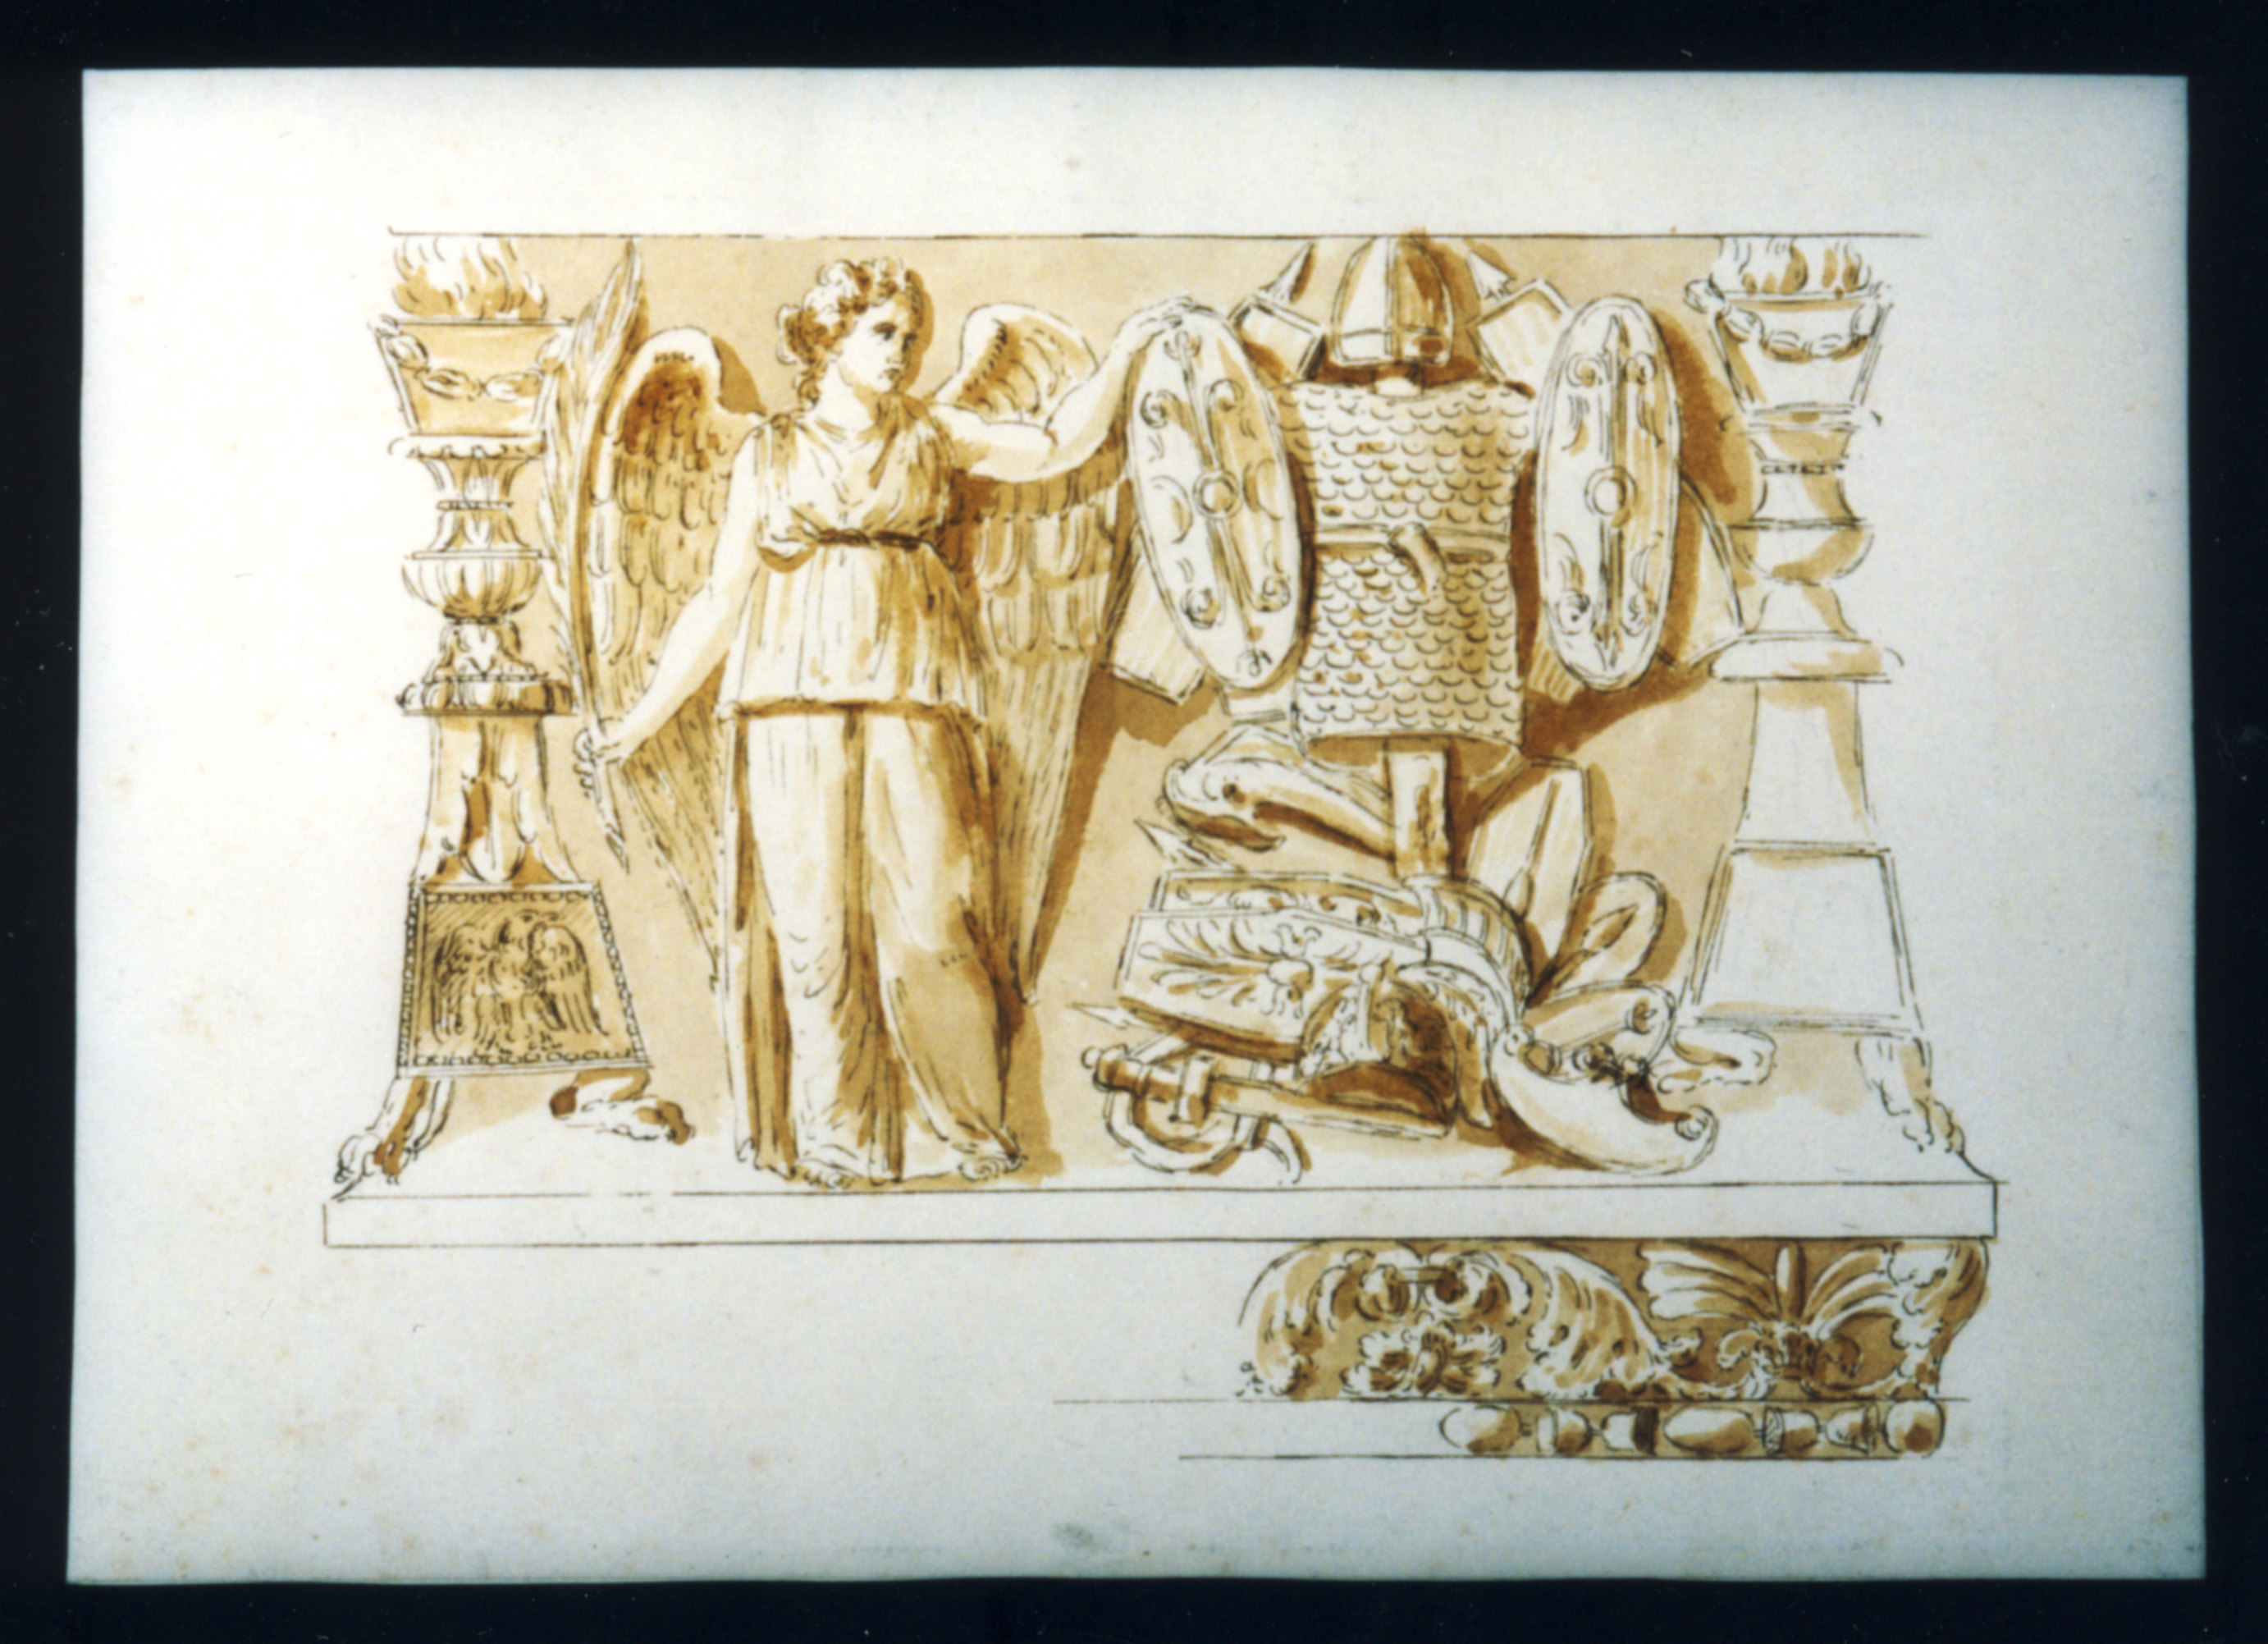 Zeichnung eines Viktoria-Trophäen-Relief. Eine weibliche Figur hält einen Lorbeerkranz. Sie steht vor militärischen Ornamenten.